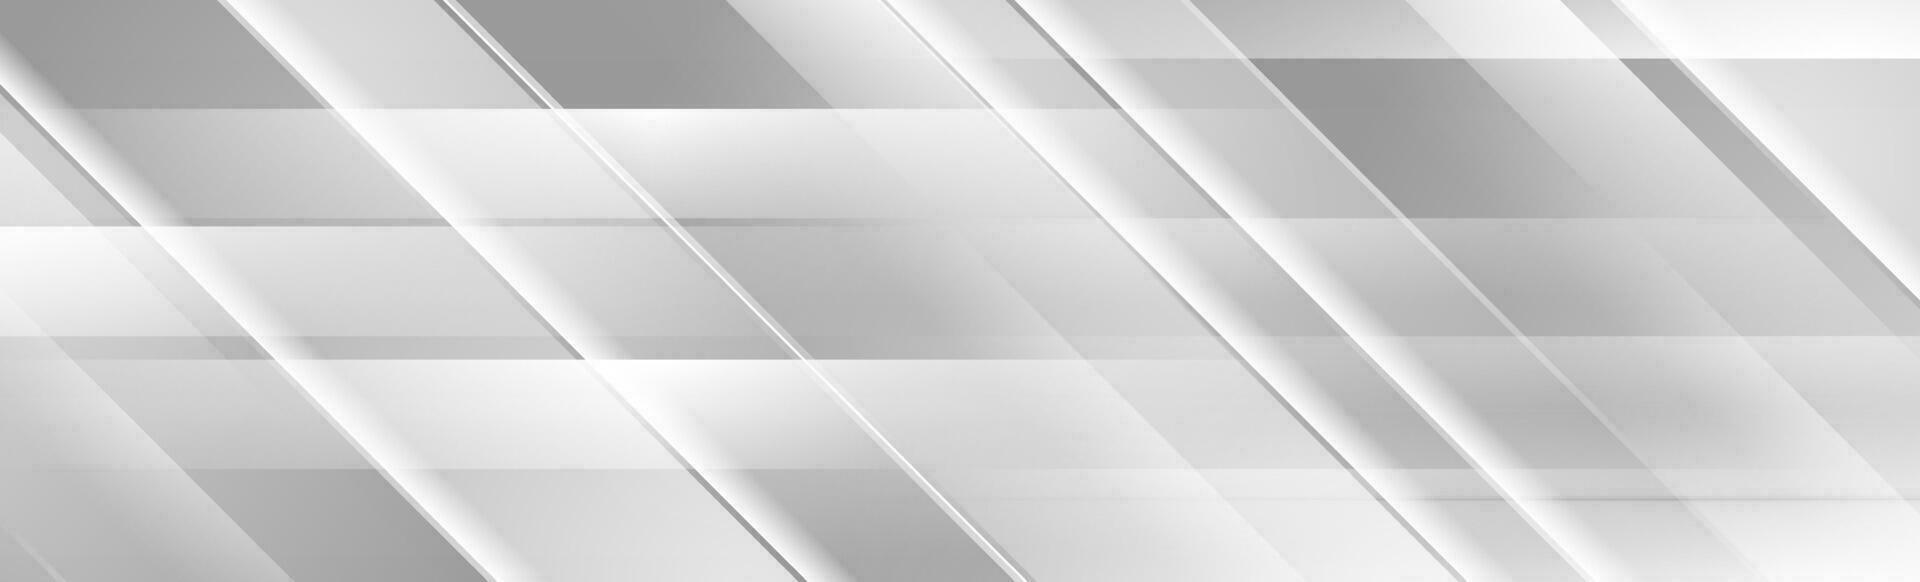 argento grigio geometrico astratto Tech bandiera design vettore